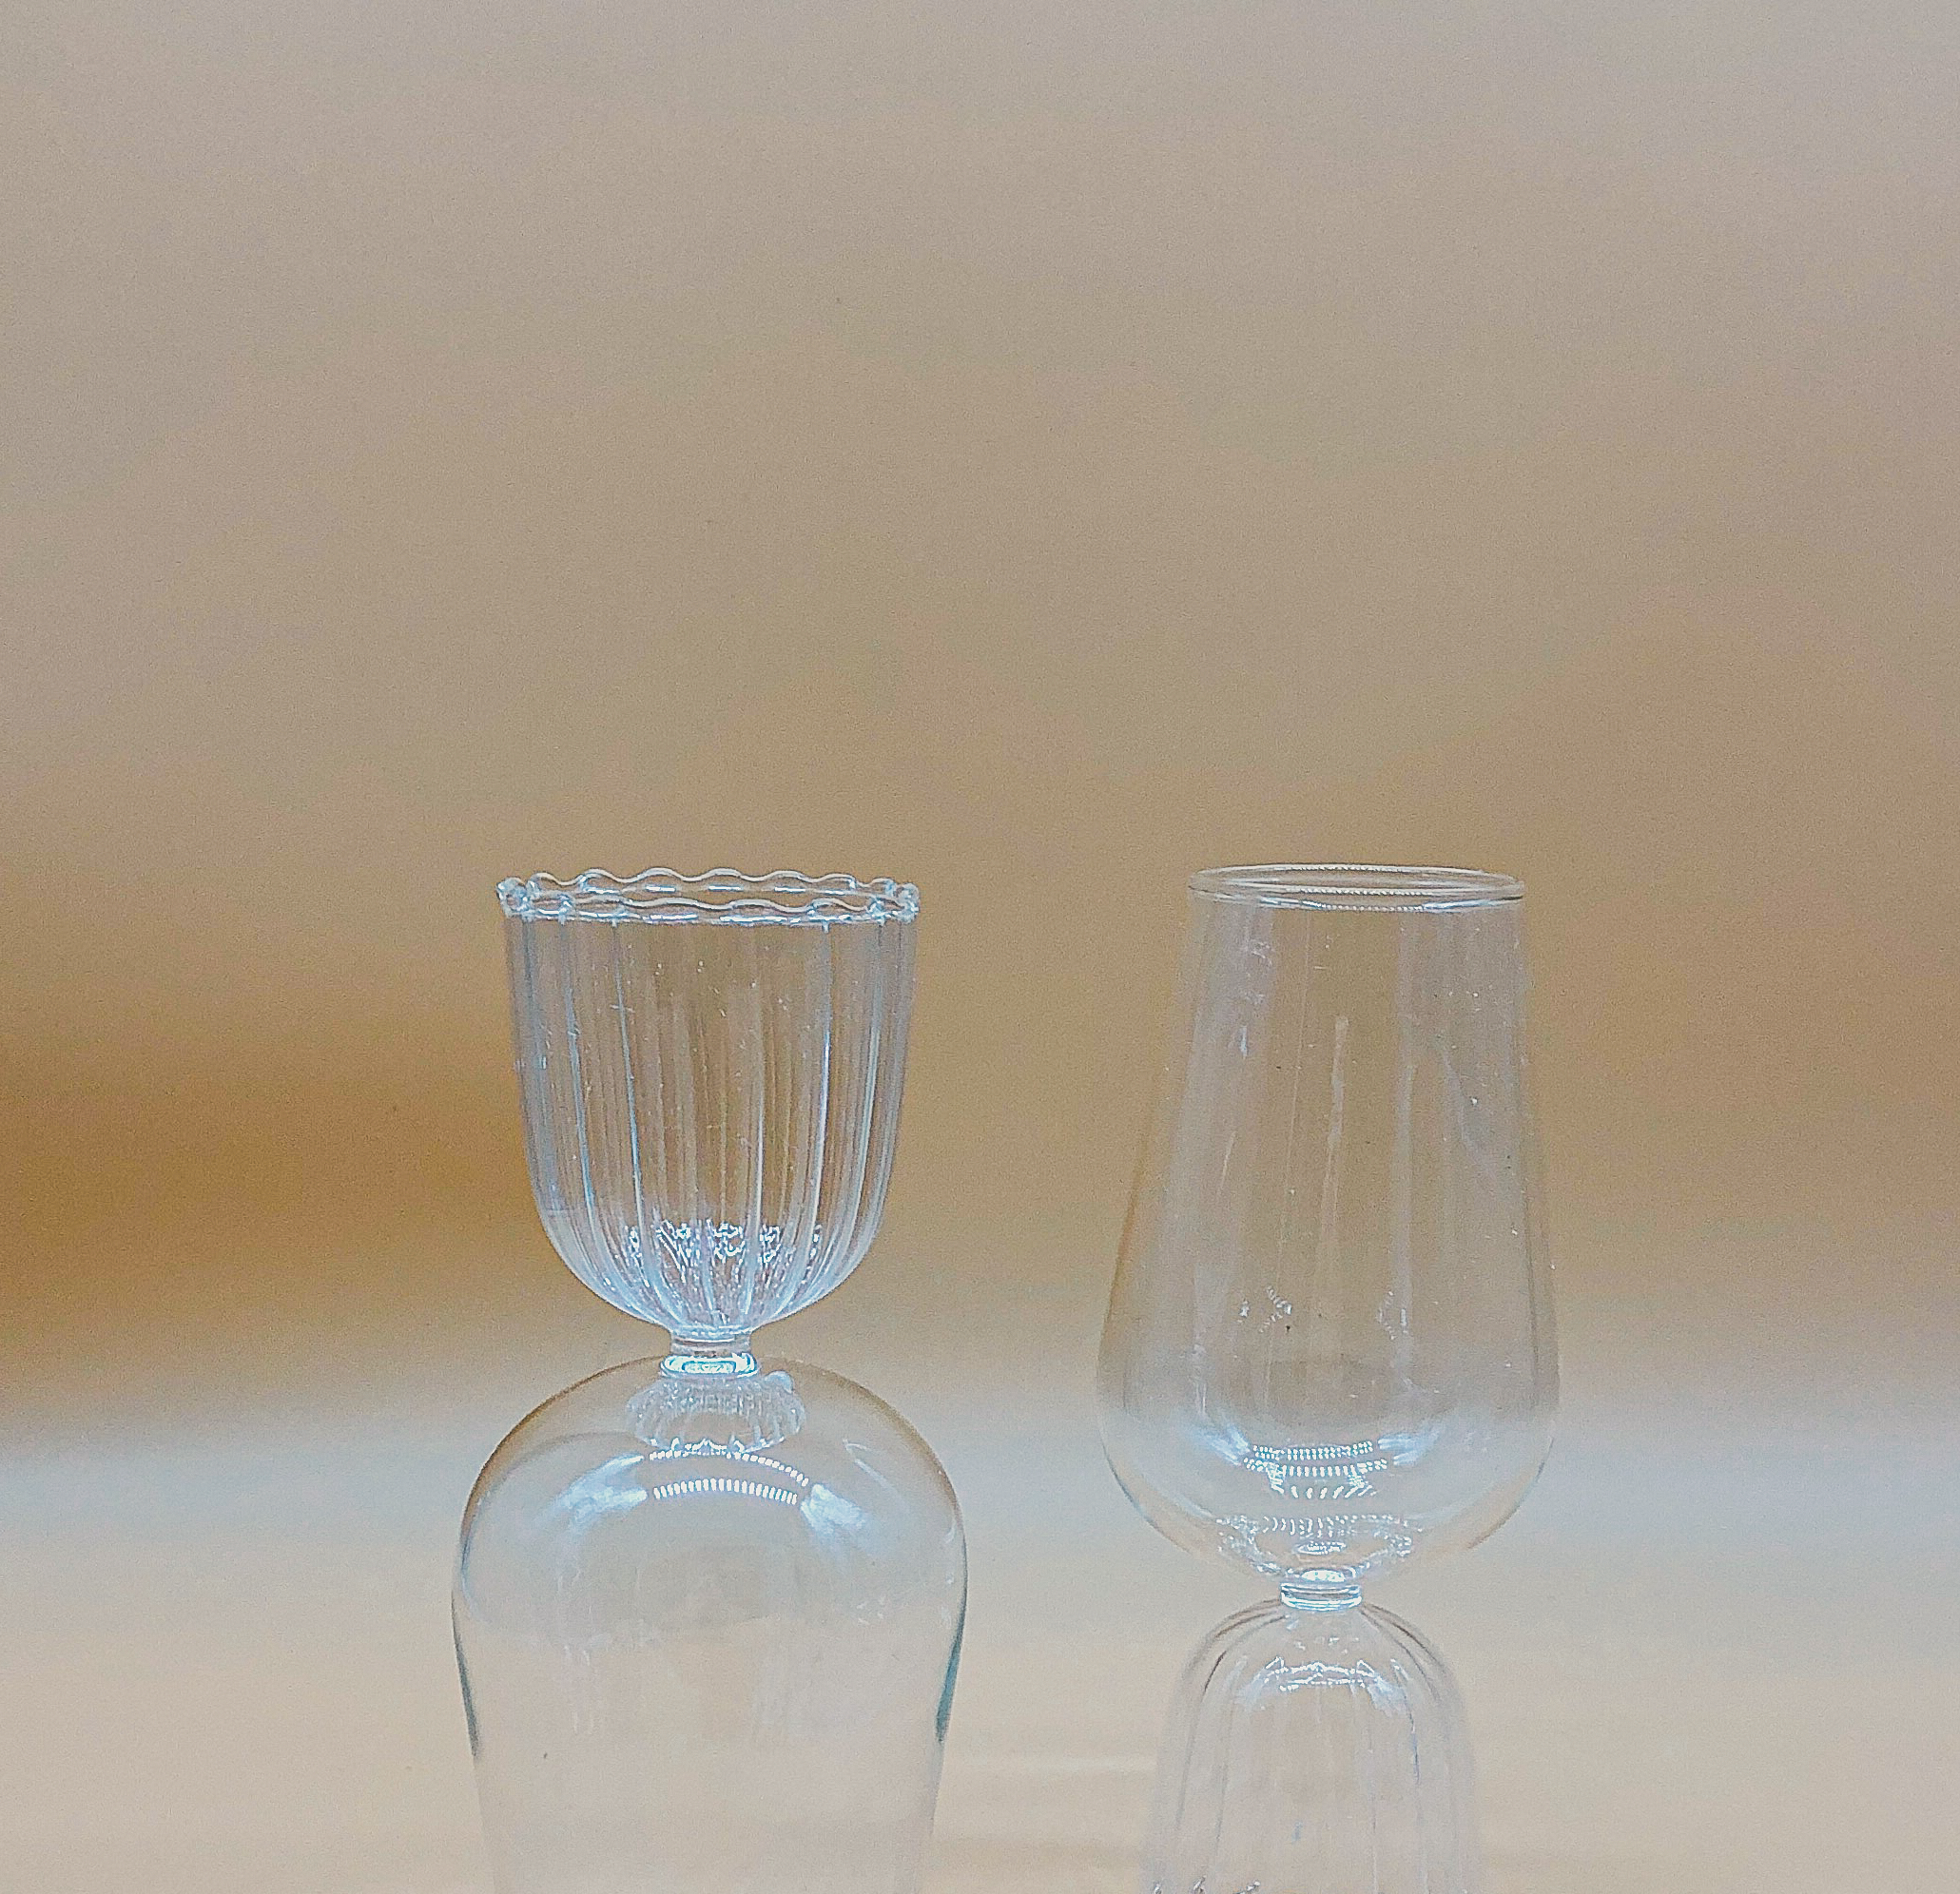 Tutu Cabernet Glass  by PROSE Tabletop